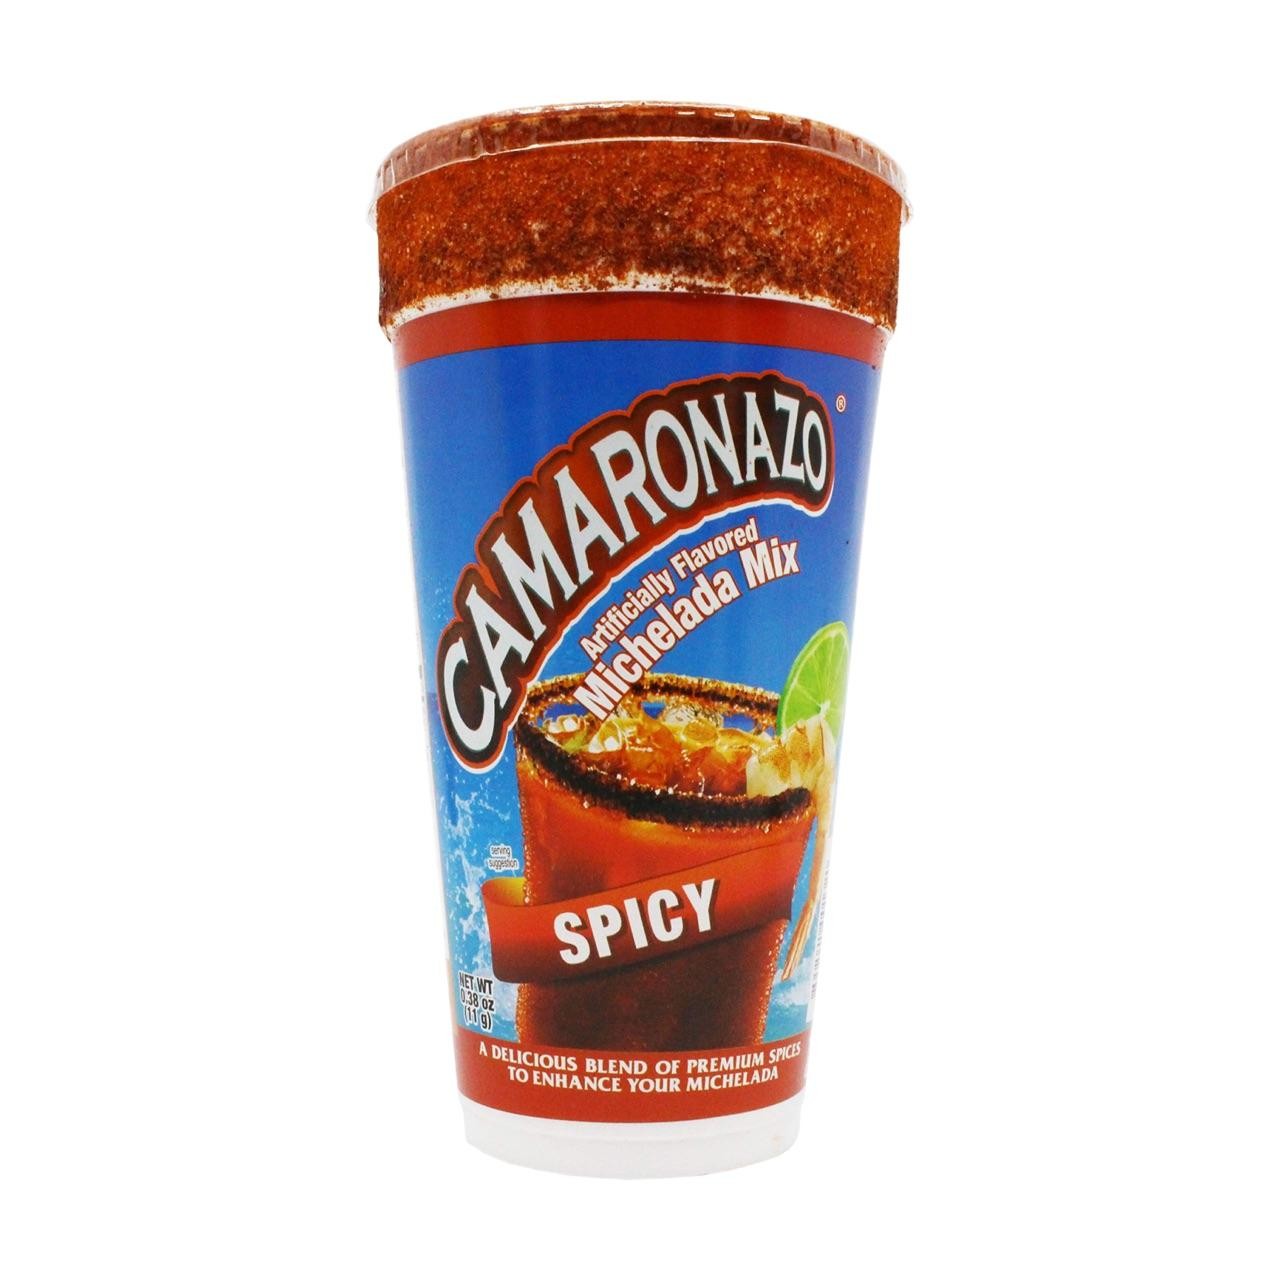 Camaronazo Michelada 24oz. Cup Spicy (0.38oz)